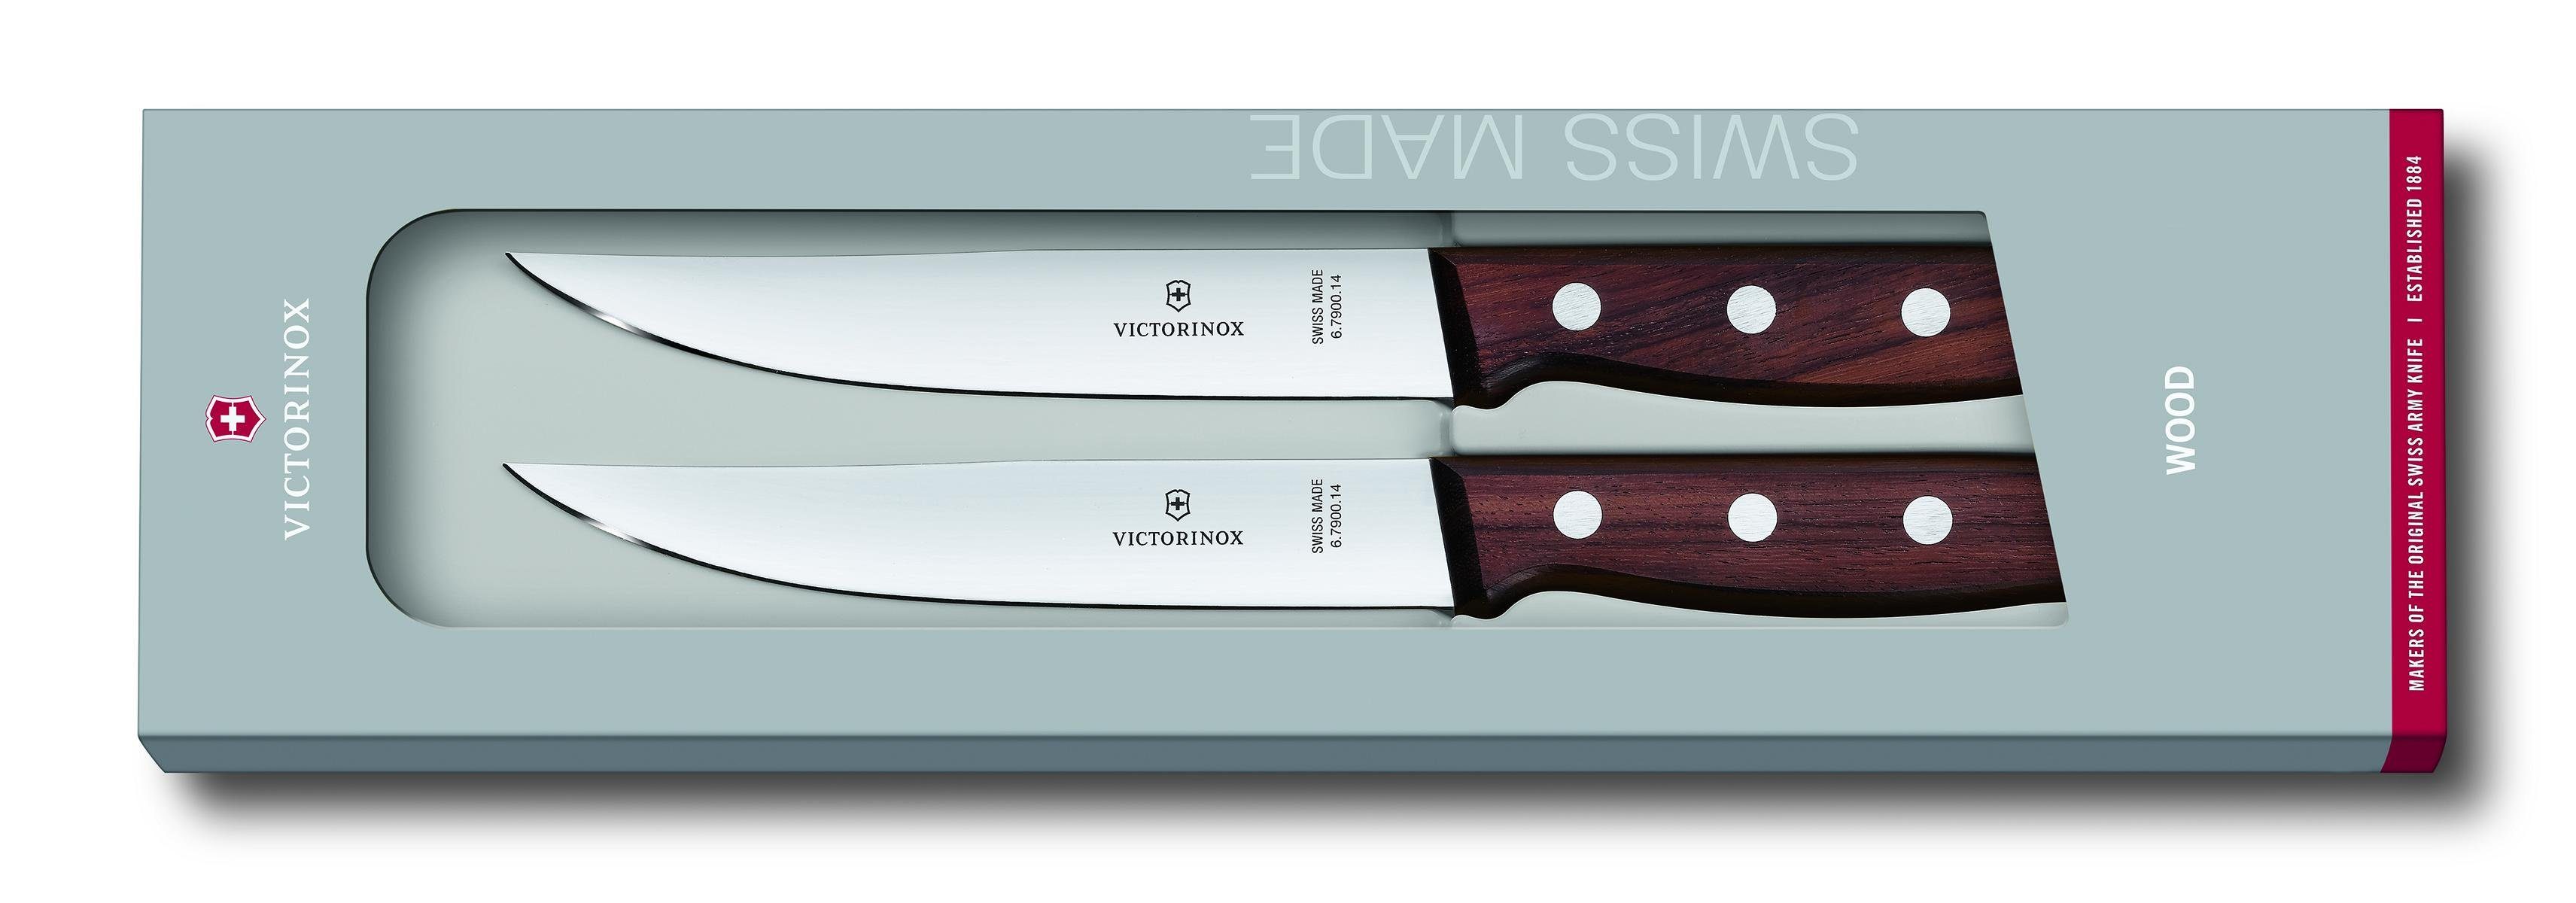 Steakmesser-Set, Victorinox Taschenmesser Rosewood Geschenkverpackung 2-teilig,